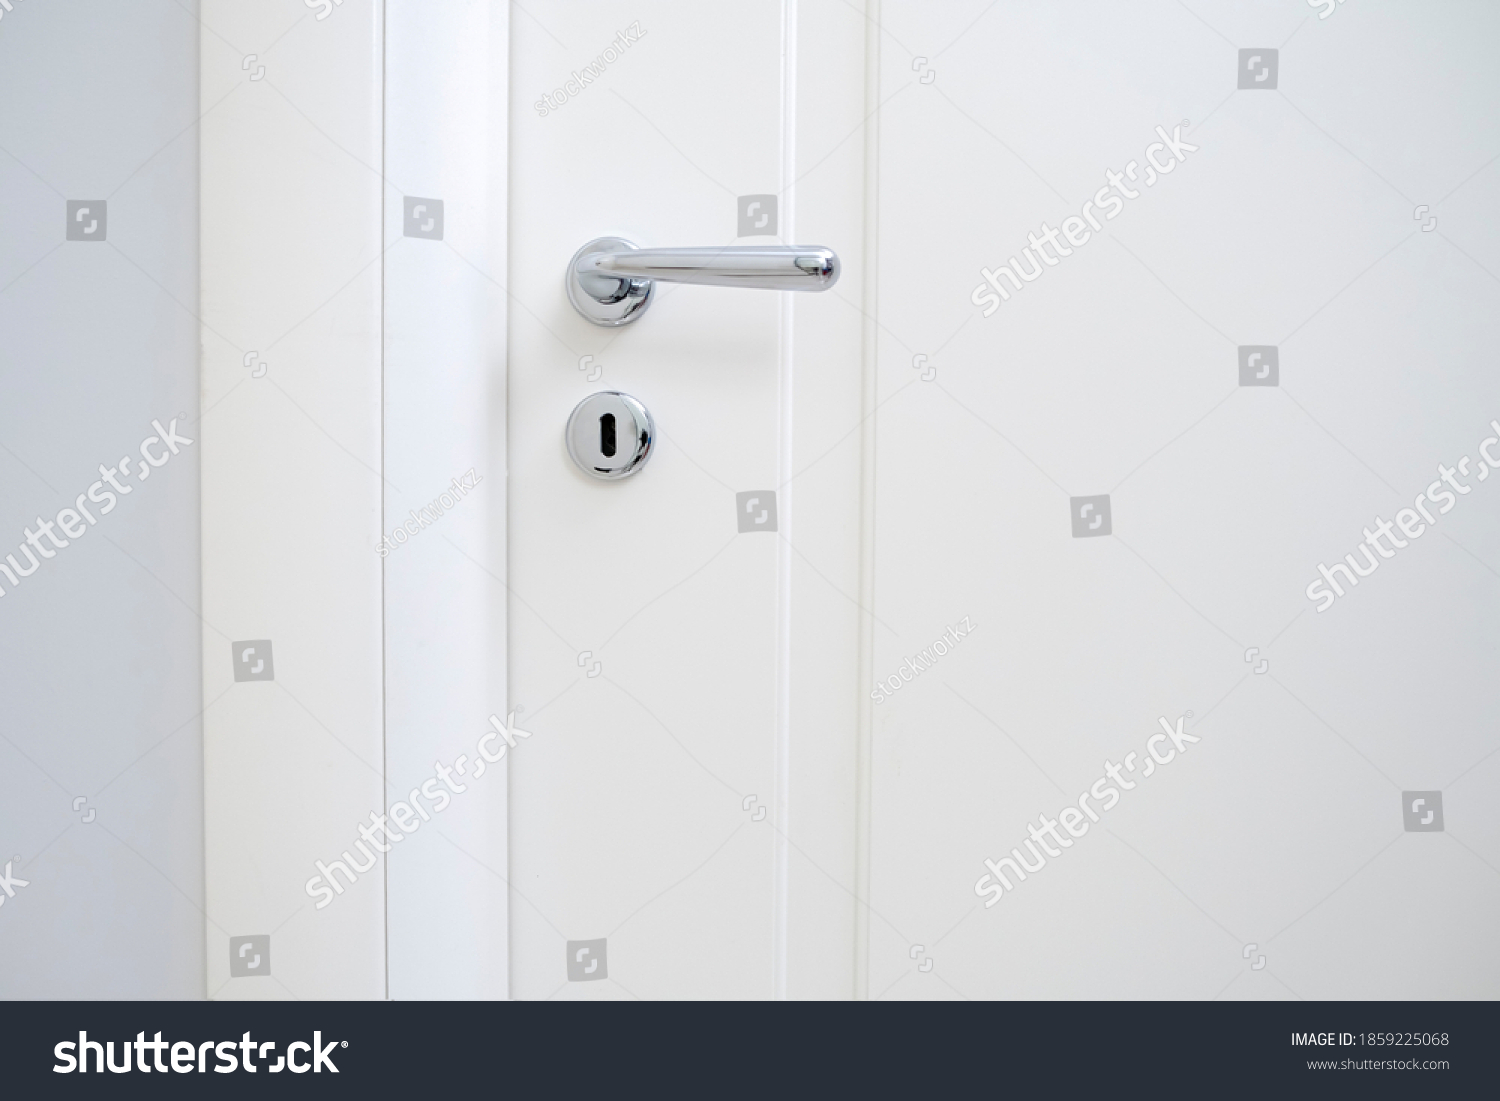 metal handle of modern new room white door #1859225068